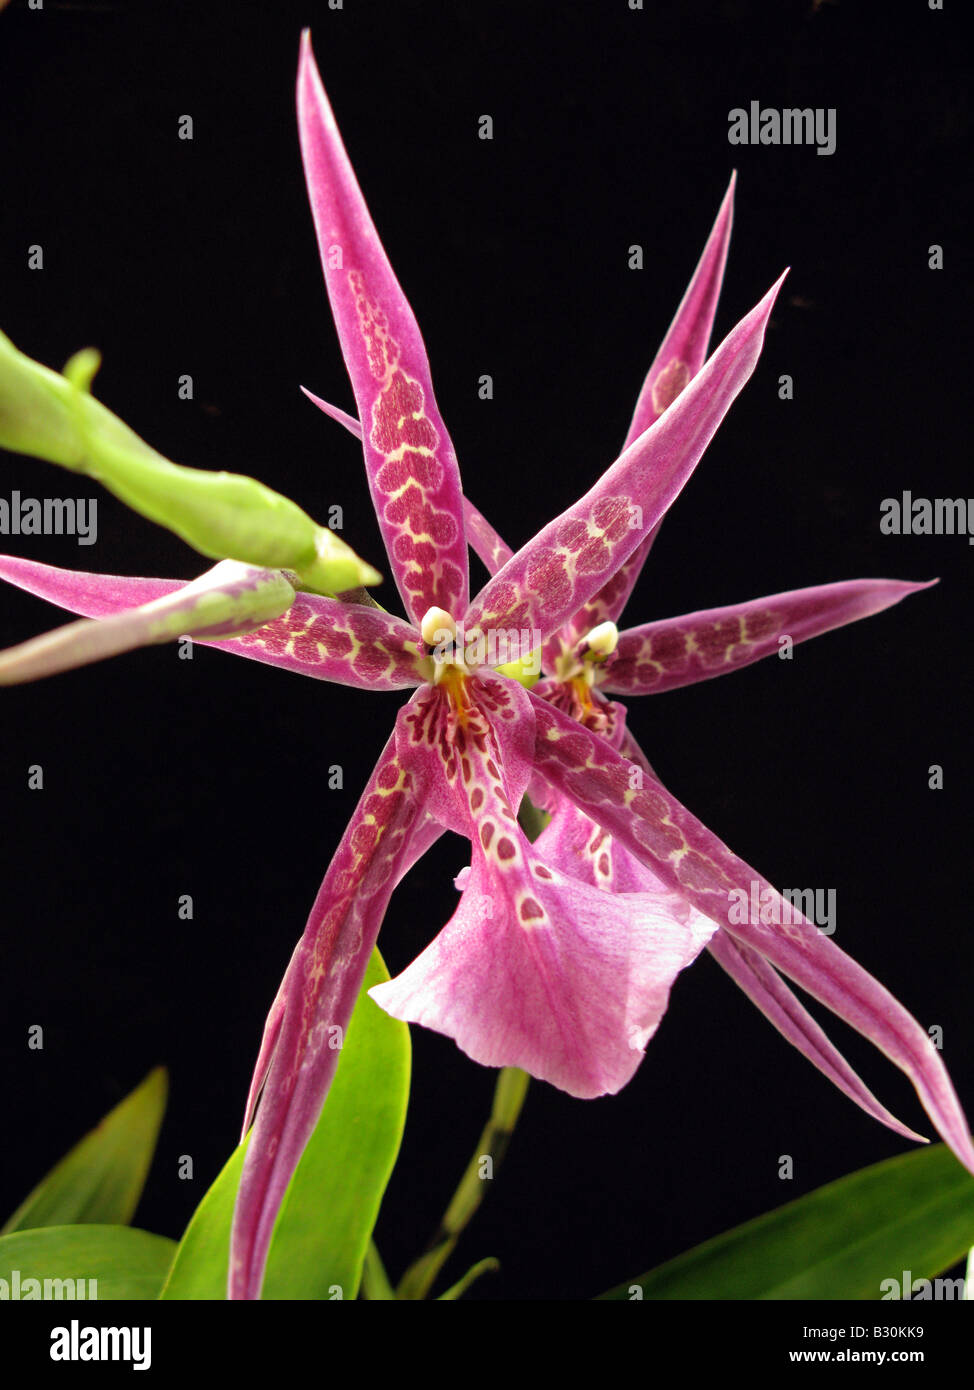 Miltasia almuck cario. Spider orchid Stock Photo